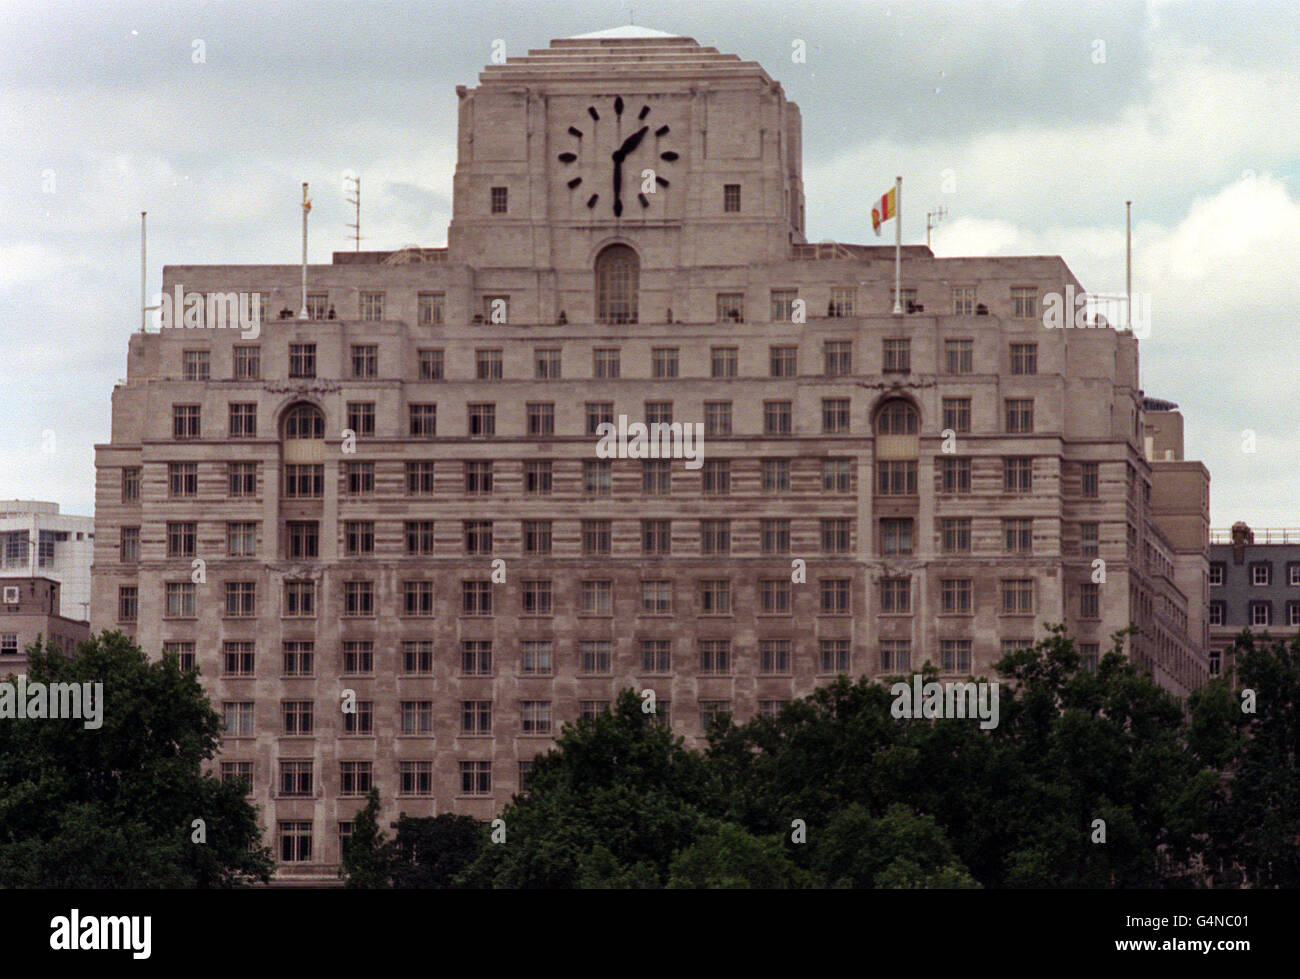 La Shell-Mex House, nello Strand di Londra, l'ex sede del colosso petrolifero anglo-olandese Shell, ha attirato molti offerenti dopo essere stata messa in vendita dai suoi proprietari all'inizio del 1999. Foto Stock